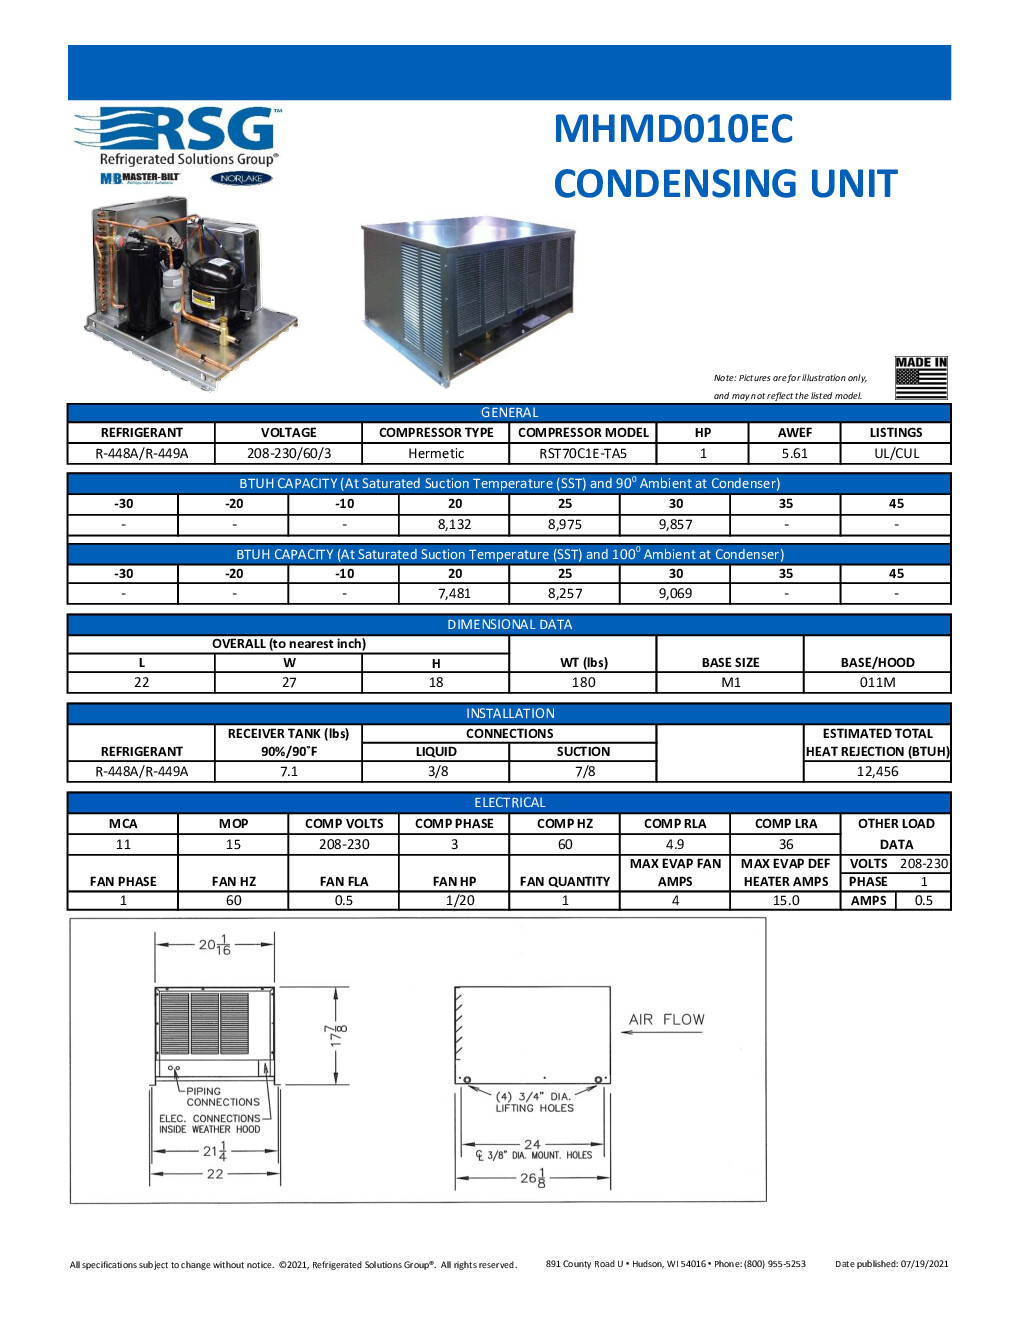 Master-Bilt MHMD010EC Remote Medium Temp Hermetic Condensing Unit, 1 HP, 208-230v/60/3-ph